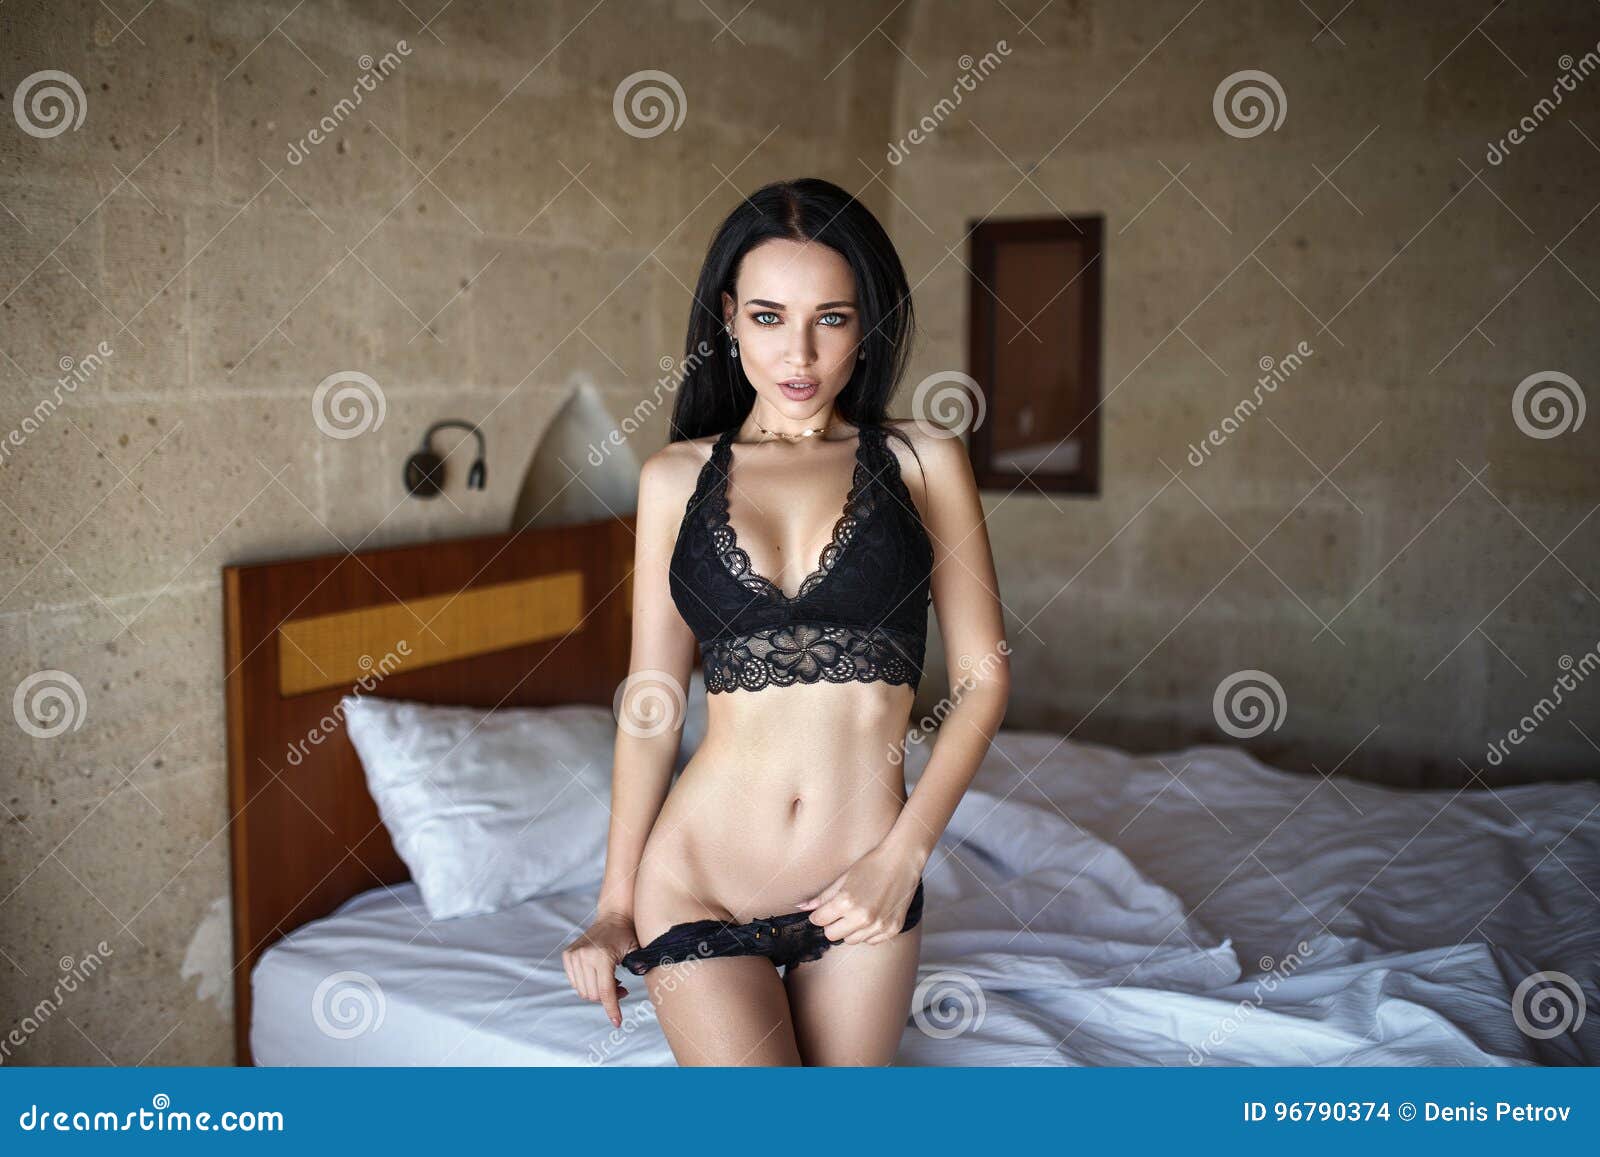 穿着内衣的性感女孩坐在床上 库存照片. 图片 包括有 理想, 人们, 激情, 家庭, 舒适, 欧洲, 摆在 - 216471190